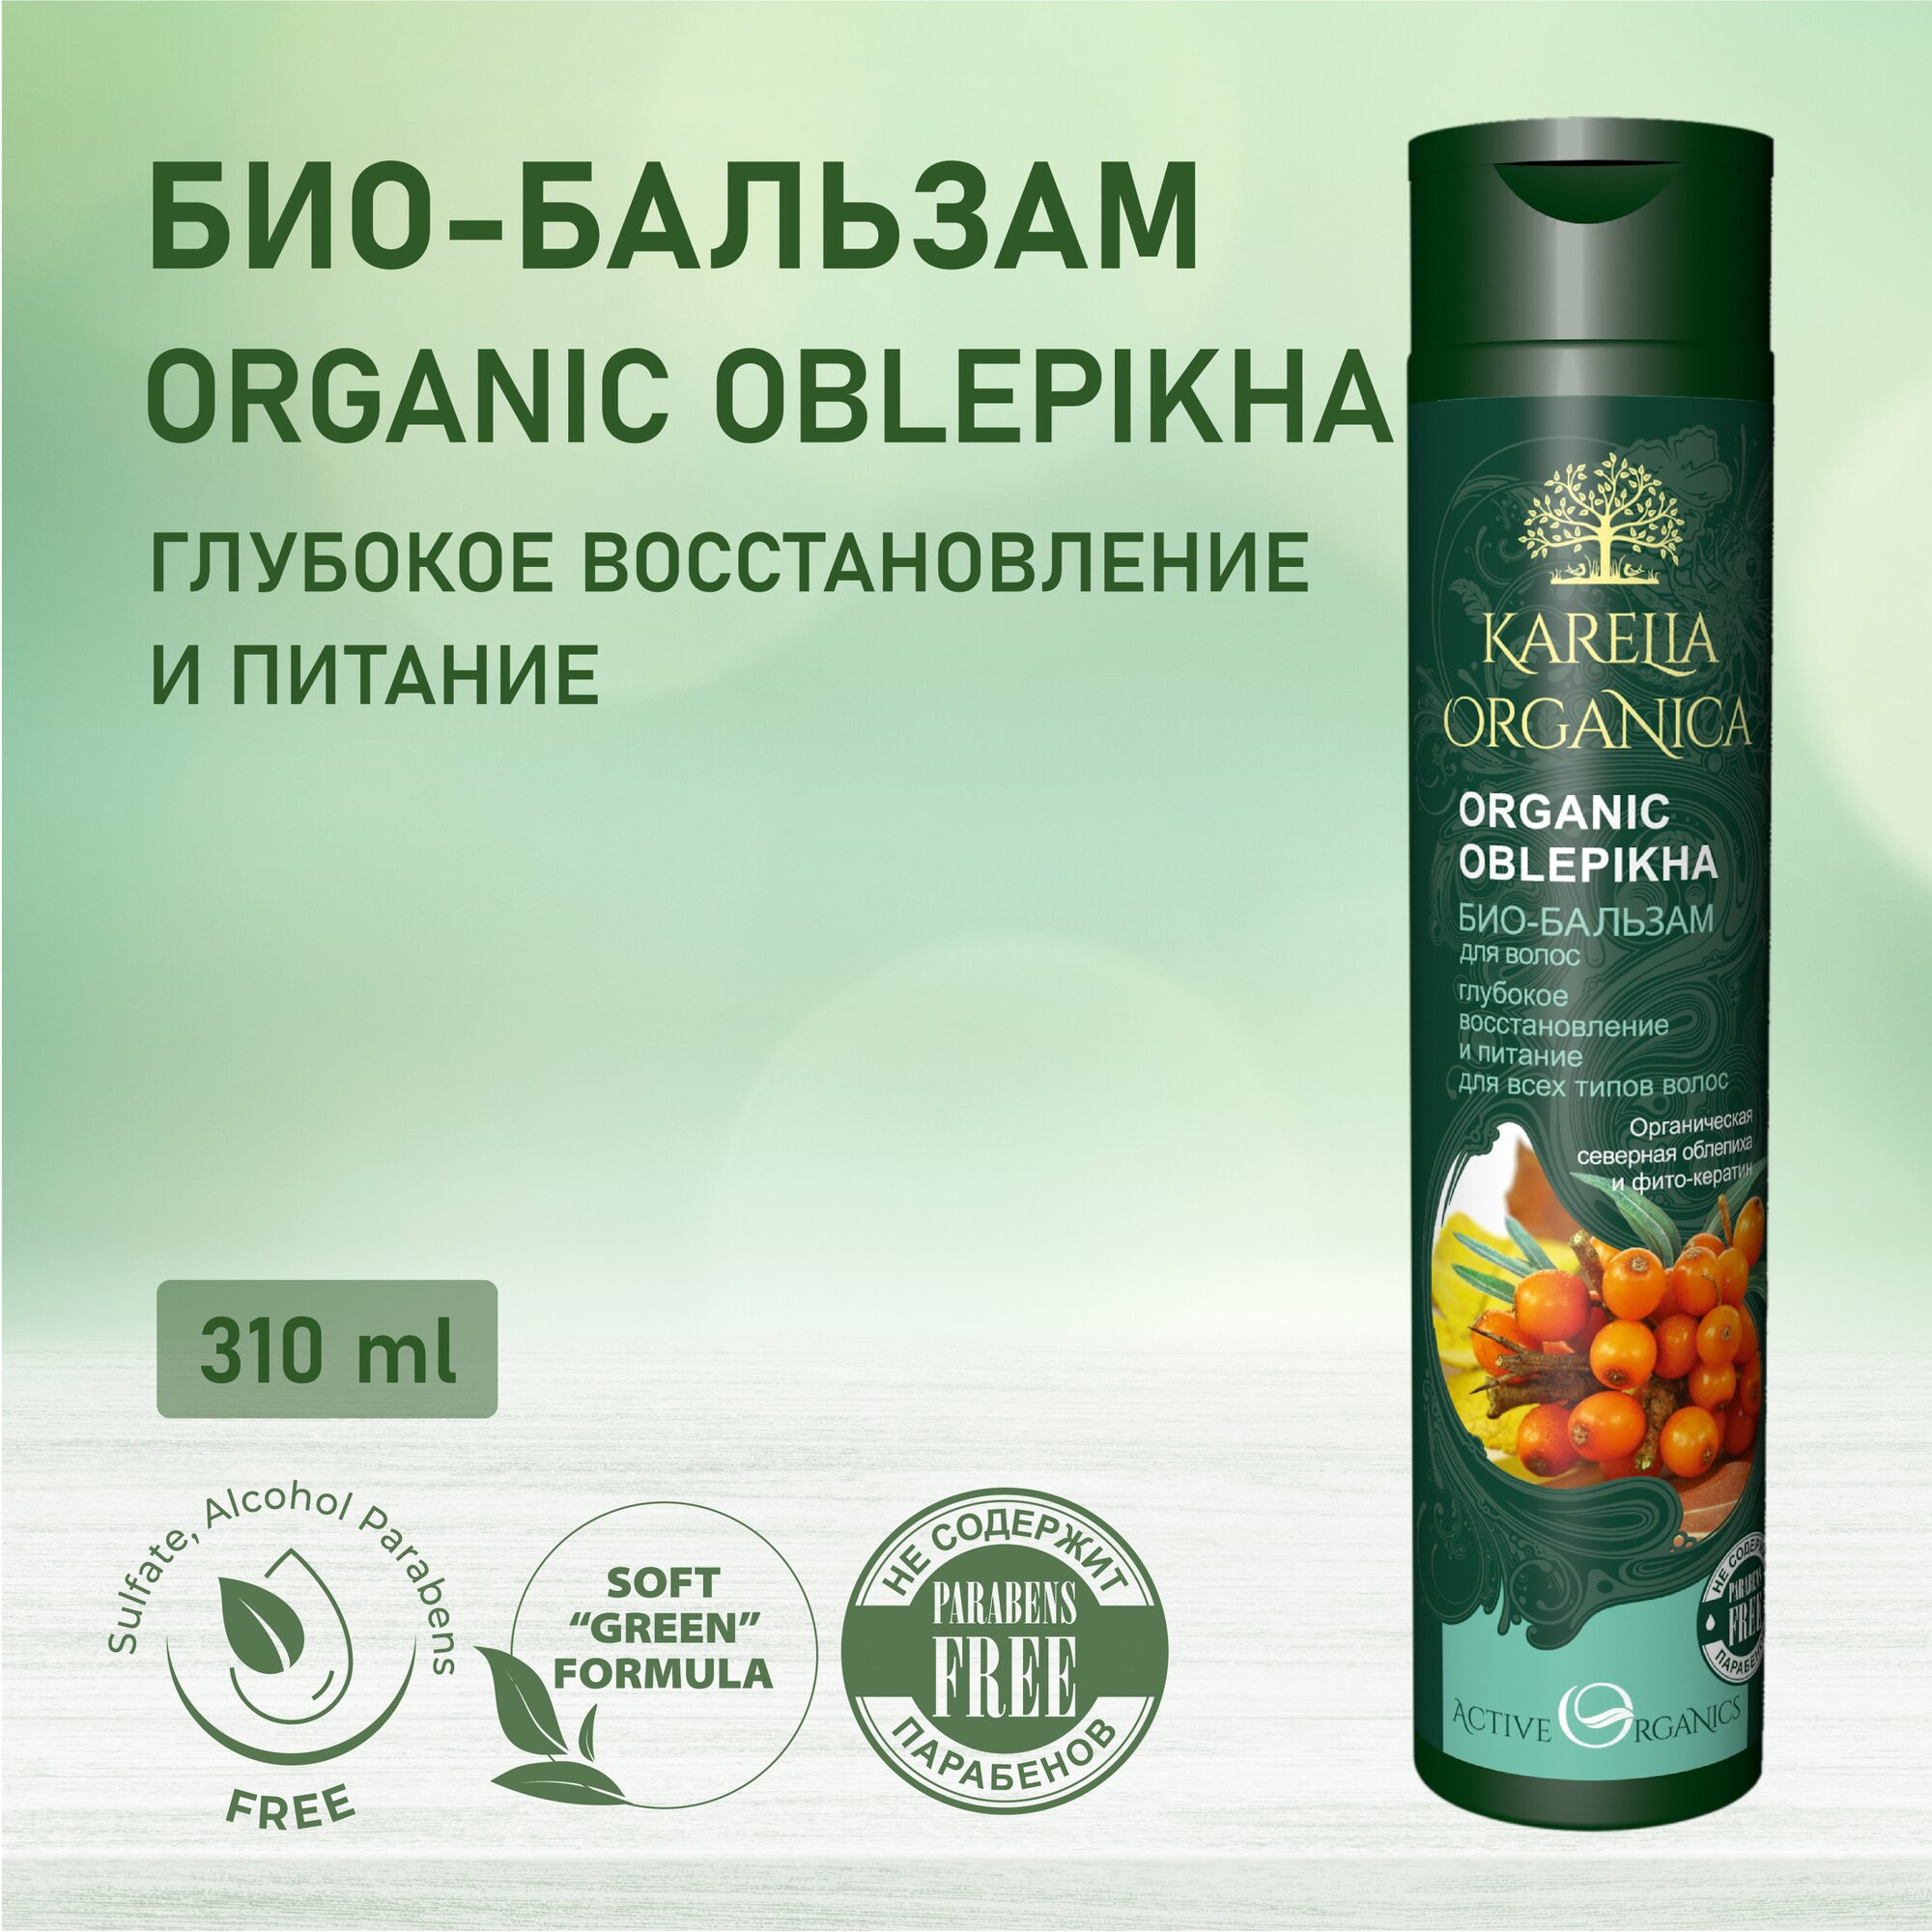 KARELIA ORGANICA Био-Бальзам для волос "Organic OBLEPIKHA" Глубокое восстановление и питание, 310мл